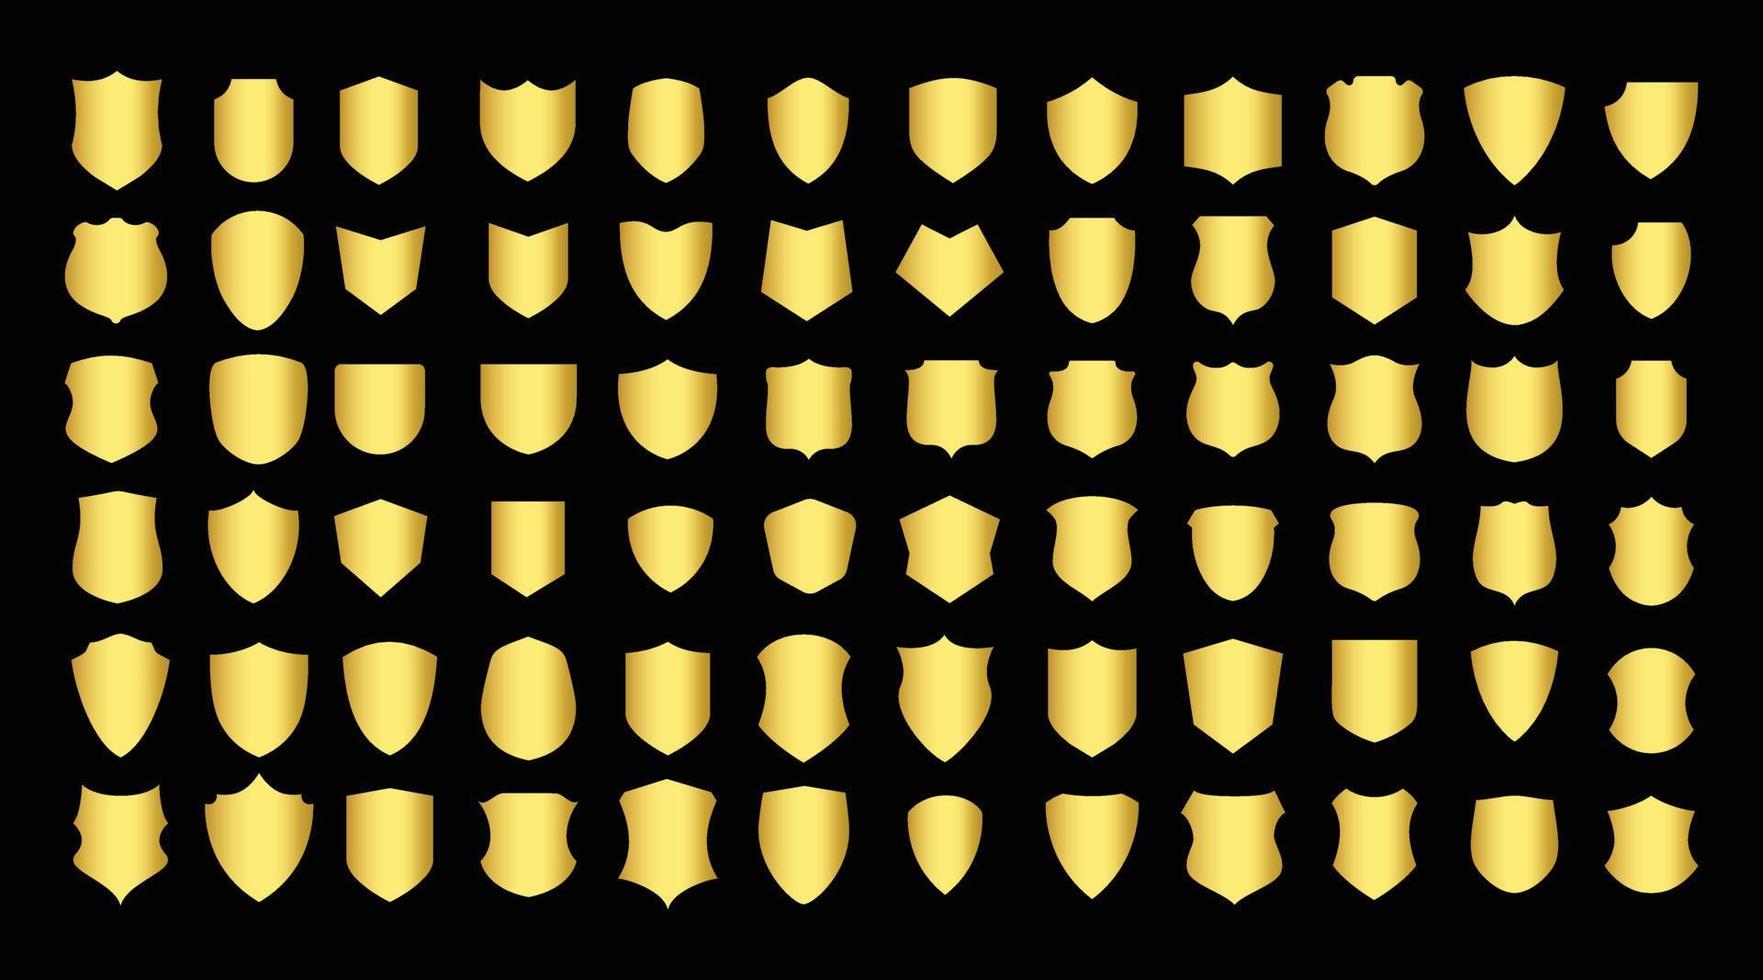 gyllene sköld design. symbol för säkerhet, makt, skydd. vektor